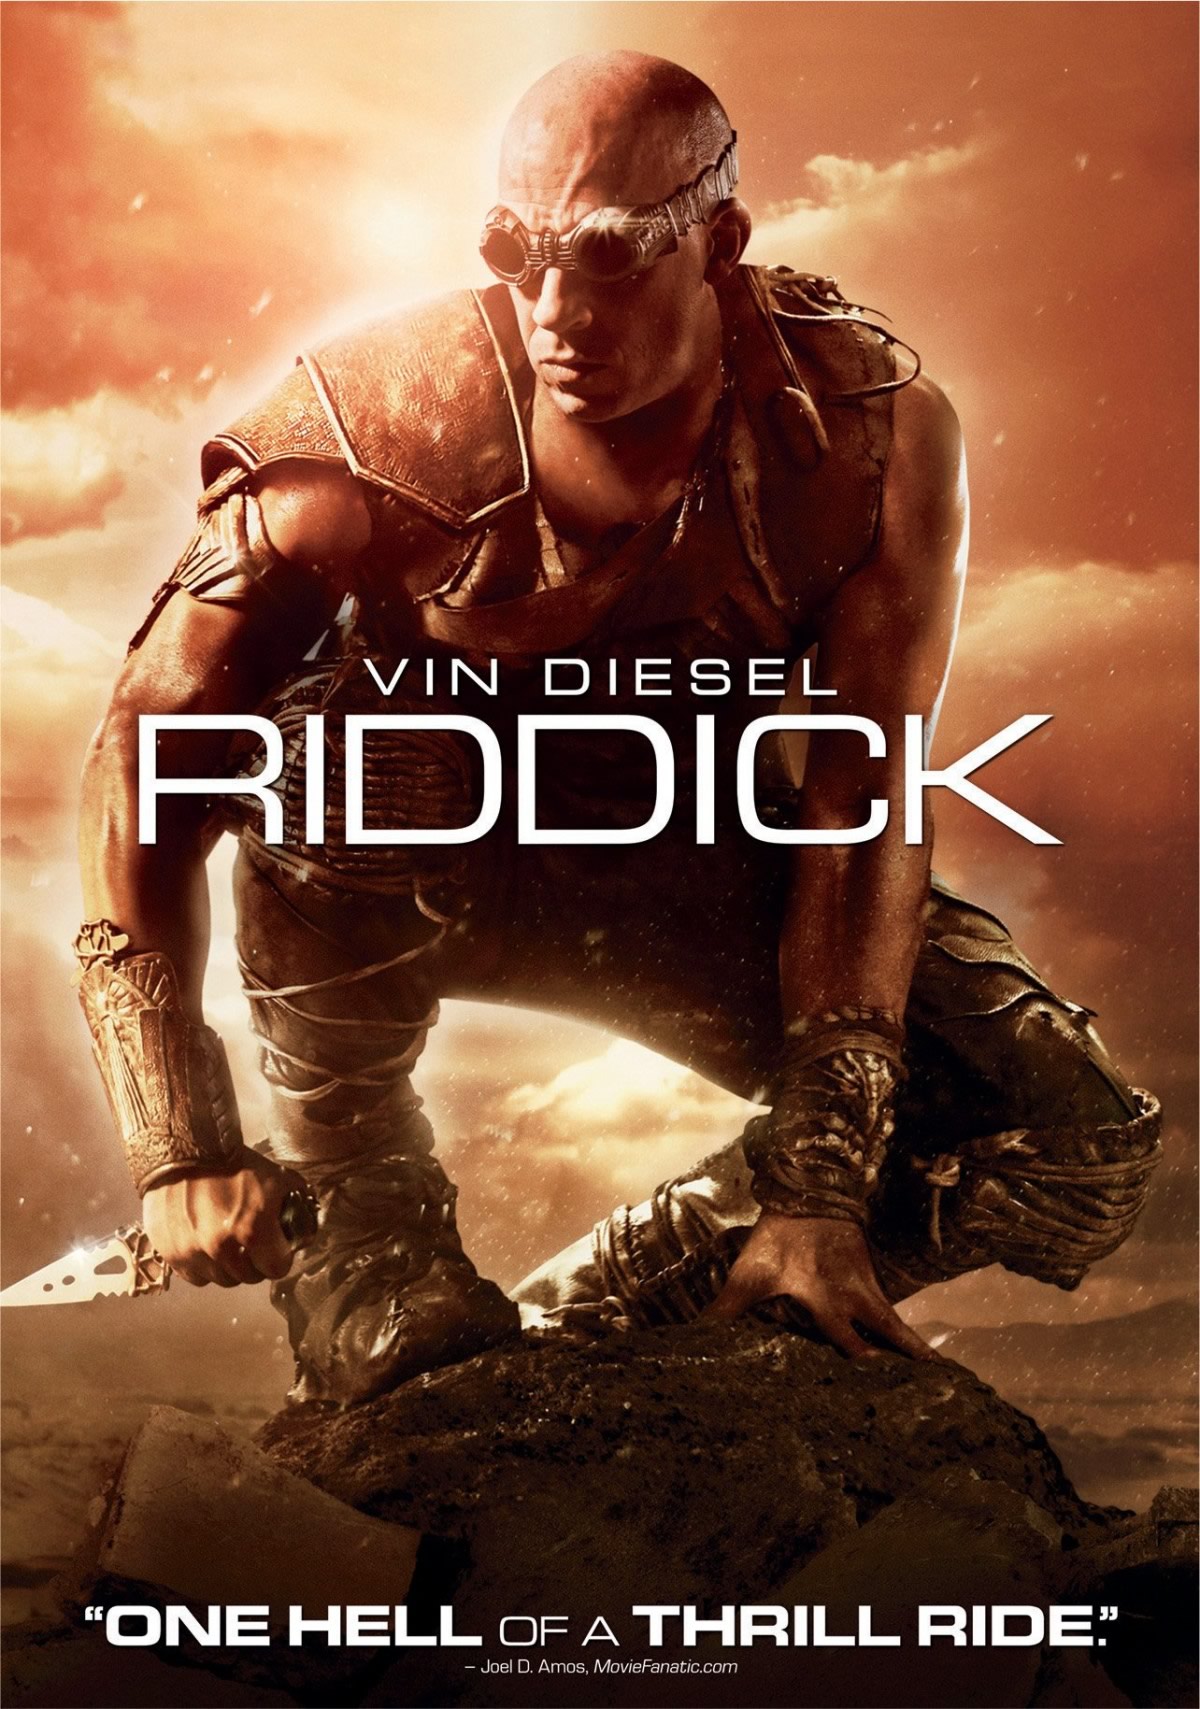 RIDDICK 4 | Vin Diesel divulga em suas redes sociais que Furia talvez esteja mais perto do que pensamos